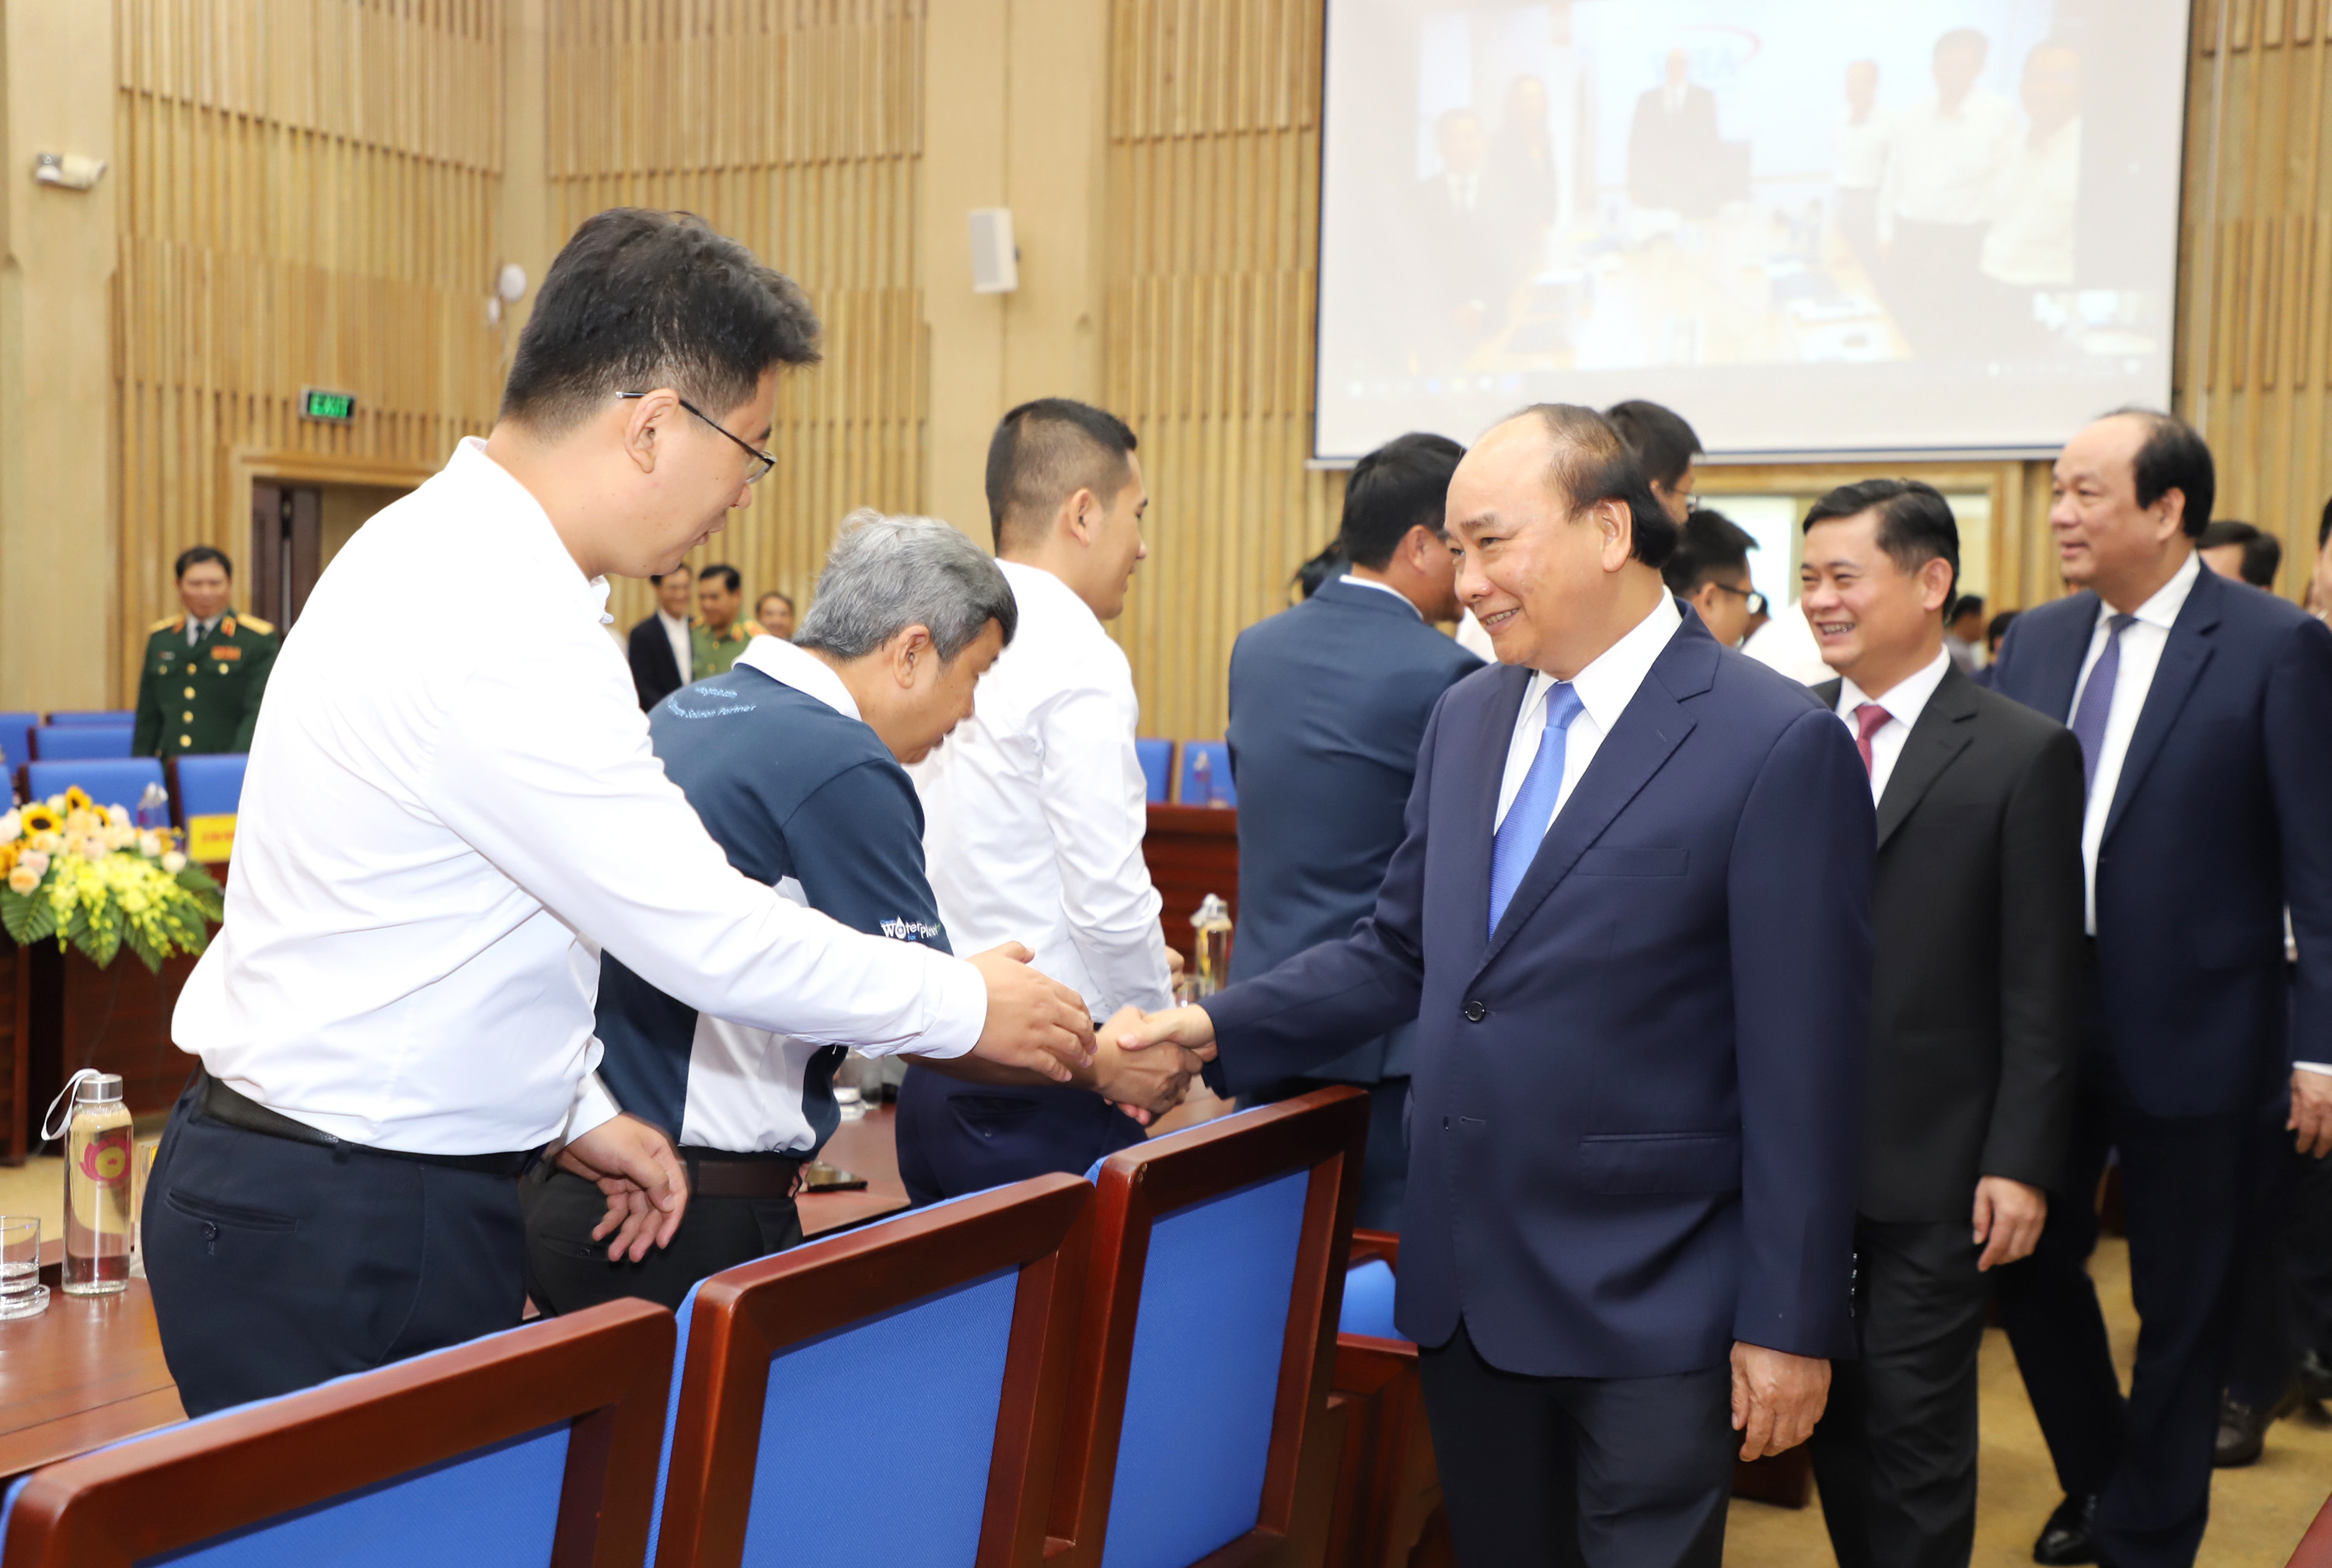 Thủ tướng Nguyễn Xuân Phúc bắt tay, chào mừng các nhà đầu tư. Ảnh: Phạm Bằng